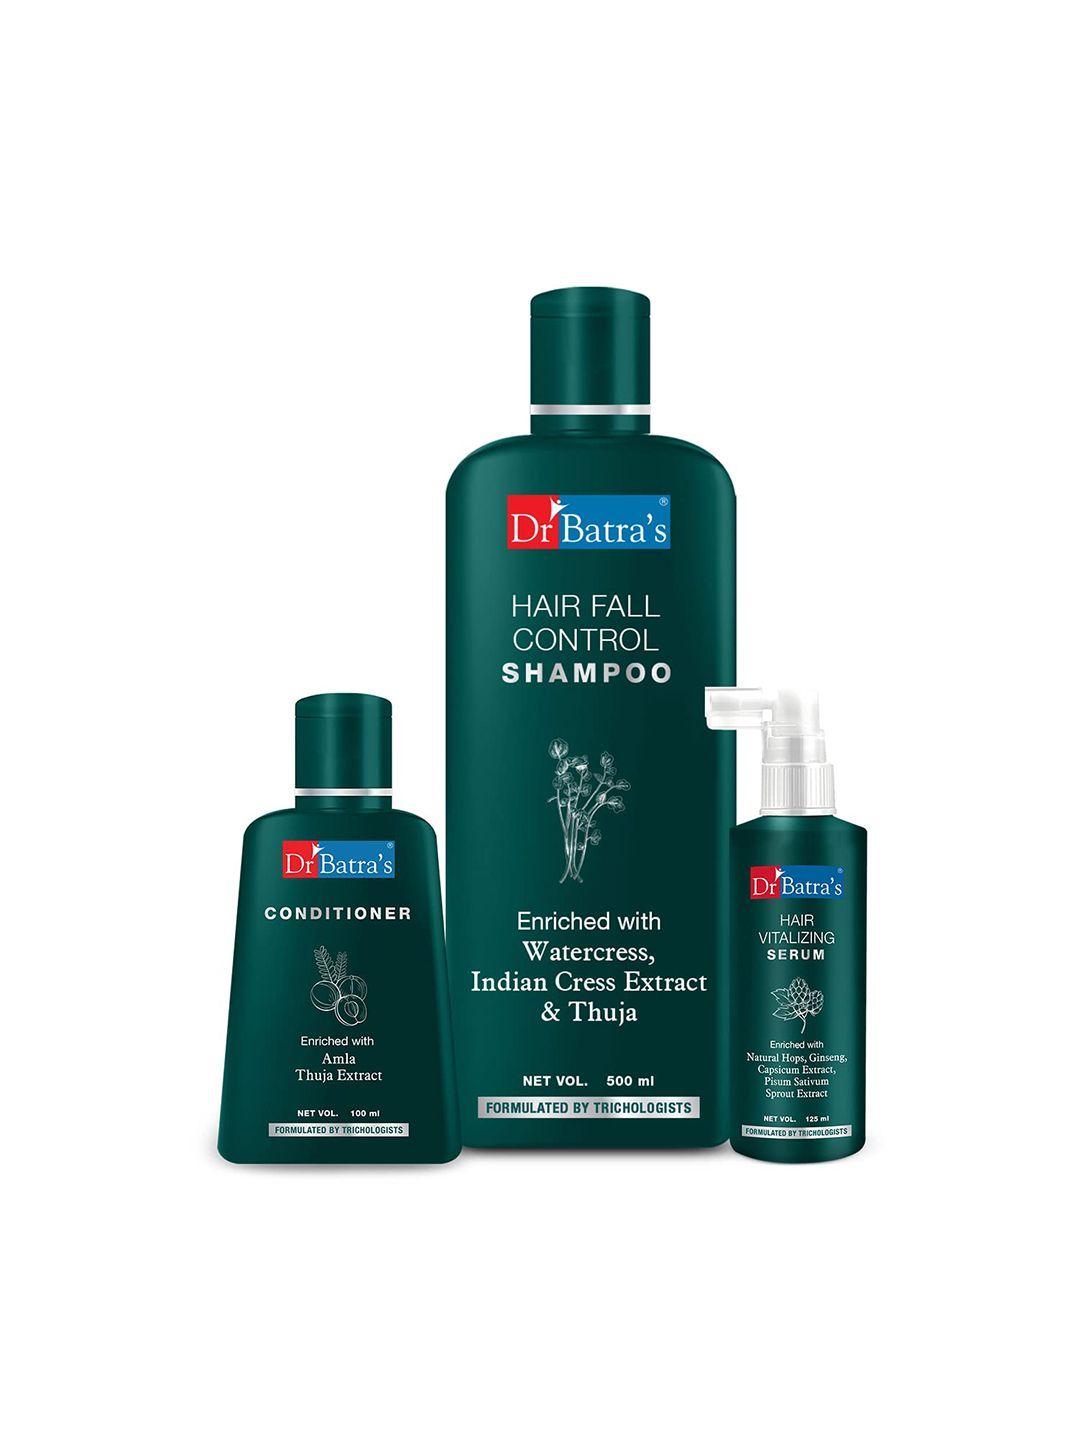 dr. batras hair vitalizing serum 125ml+ conditioner 100ml+ hair fall control shampoo 500ml